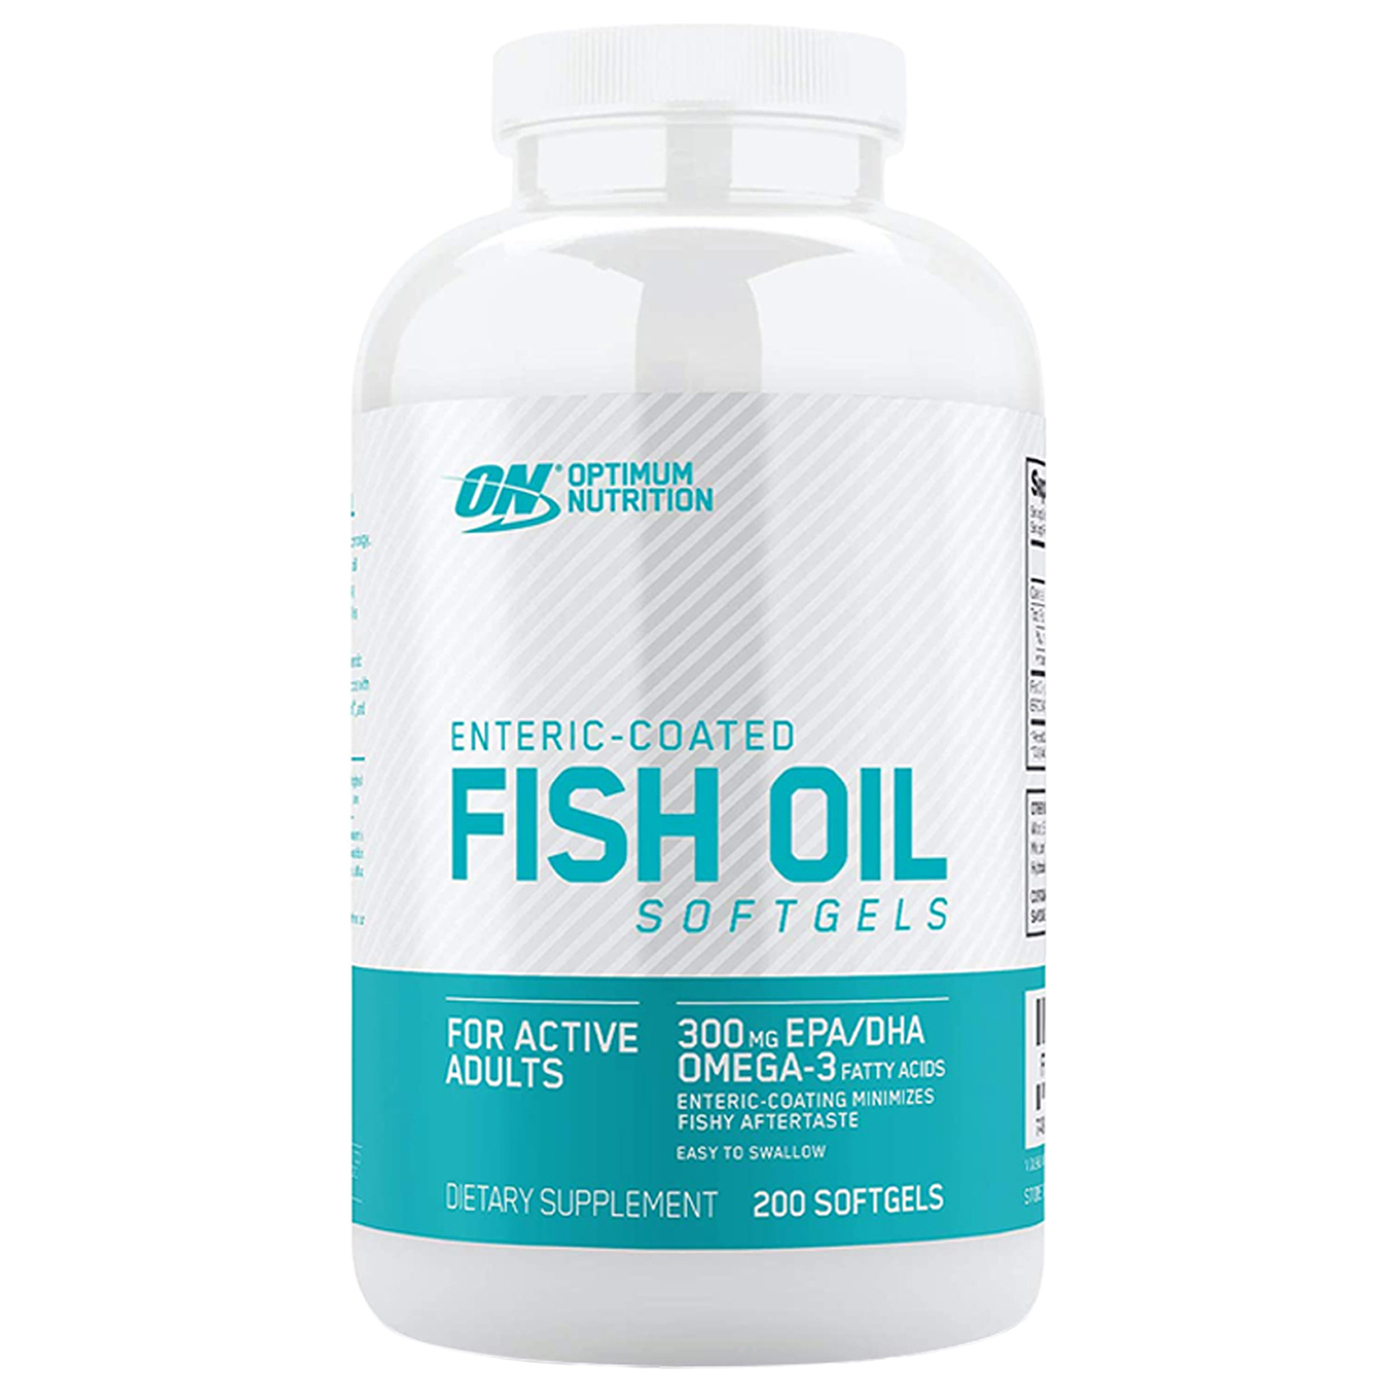 Optimum Nutrition Enteric Coated Fish Oil Softgels,200 капс. Омега 3